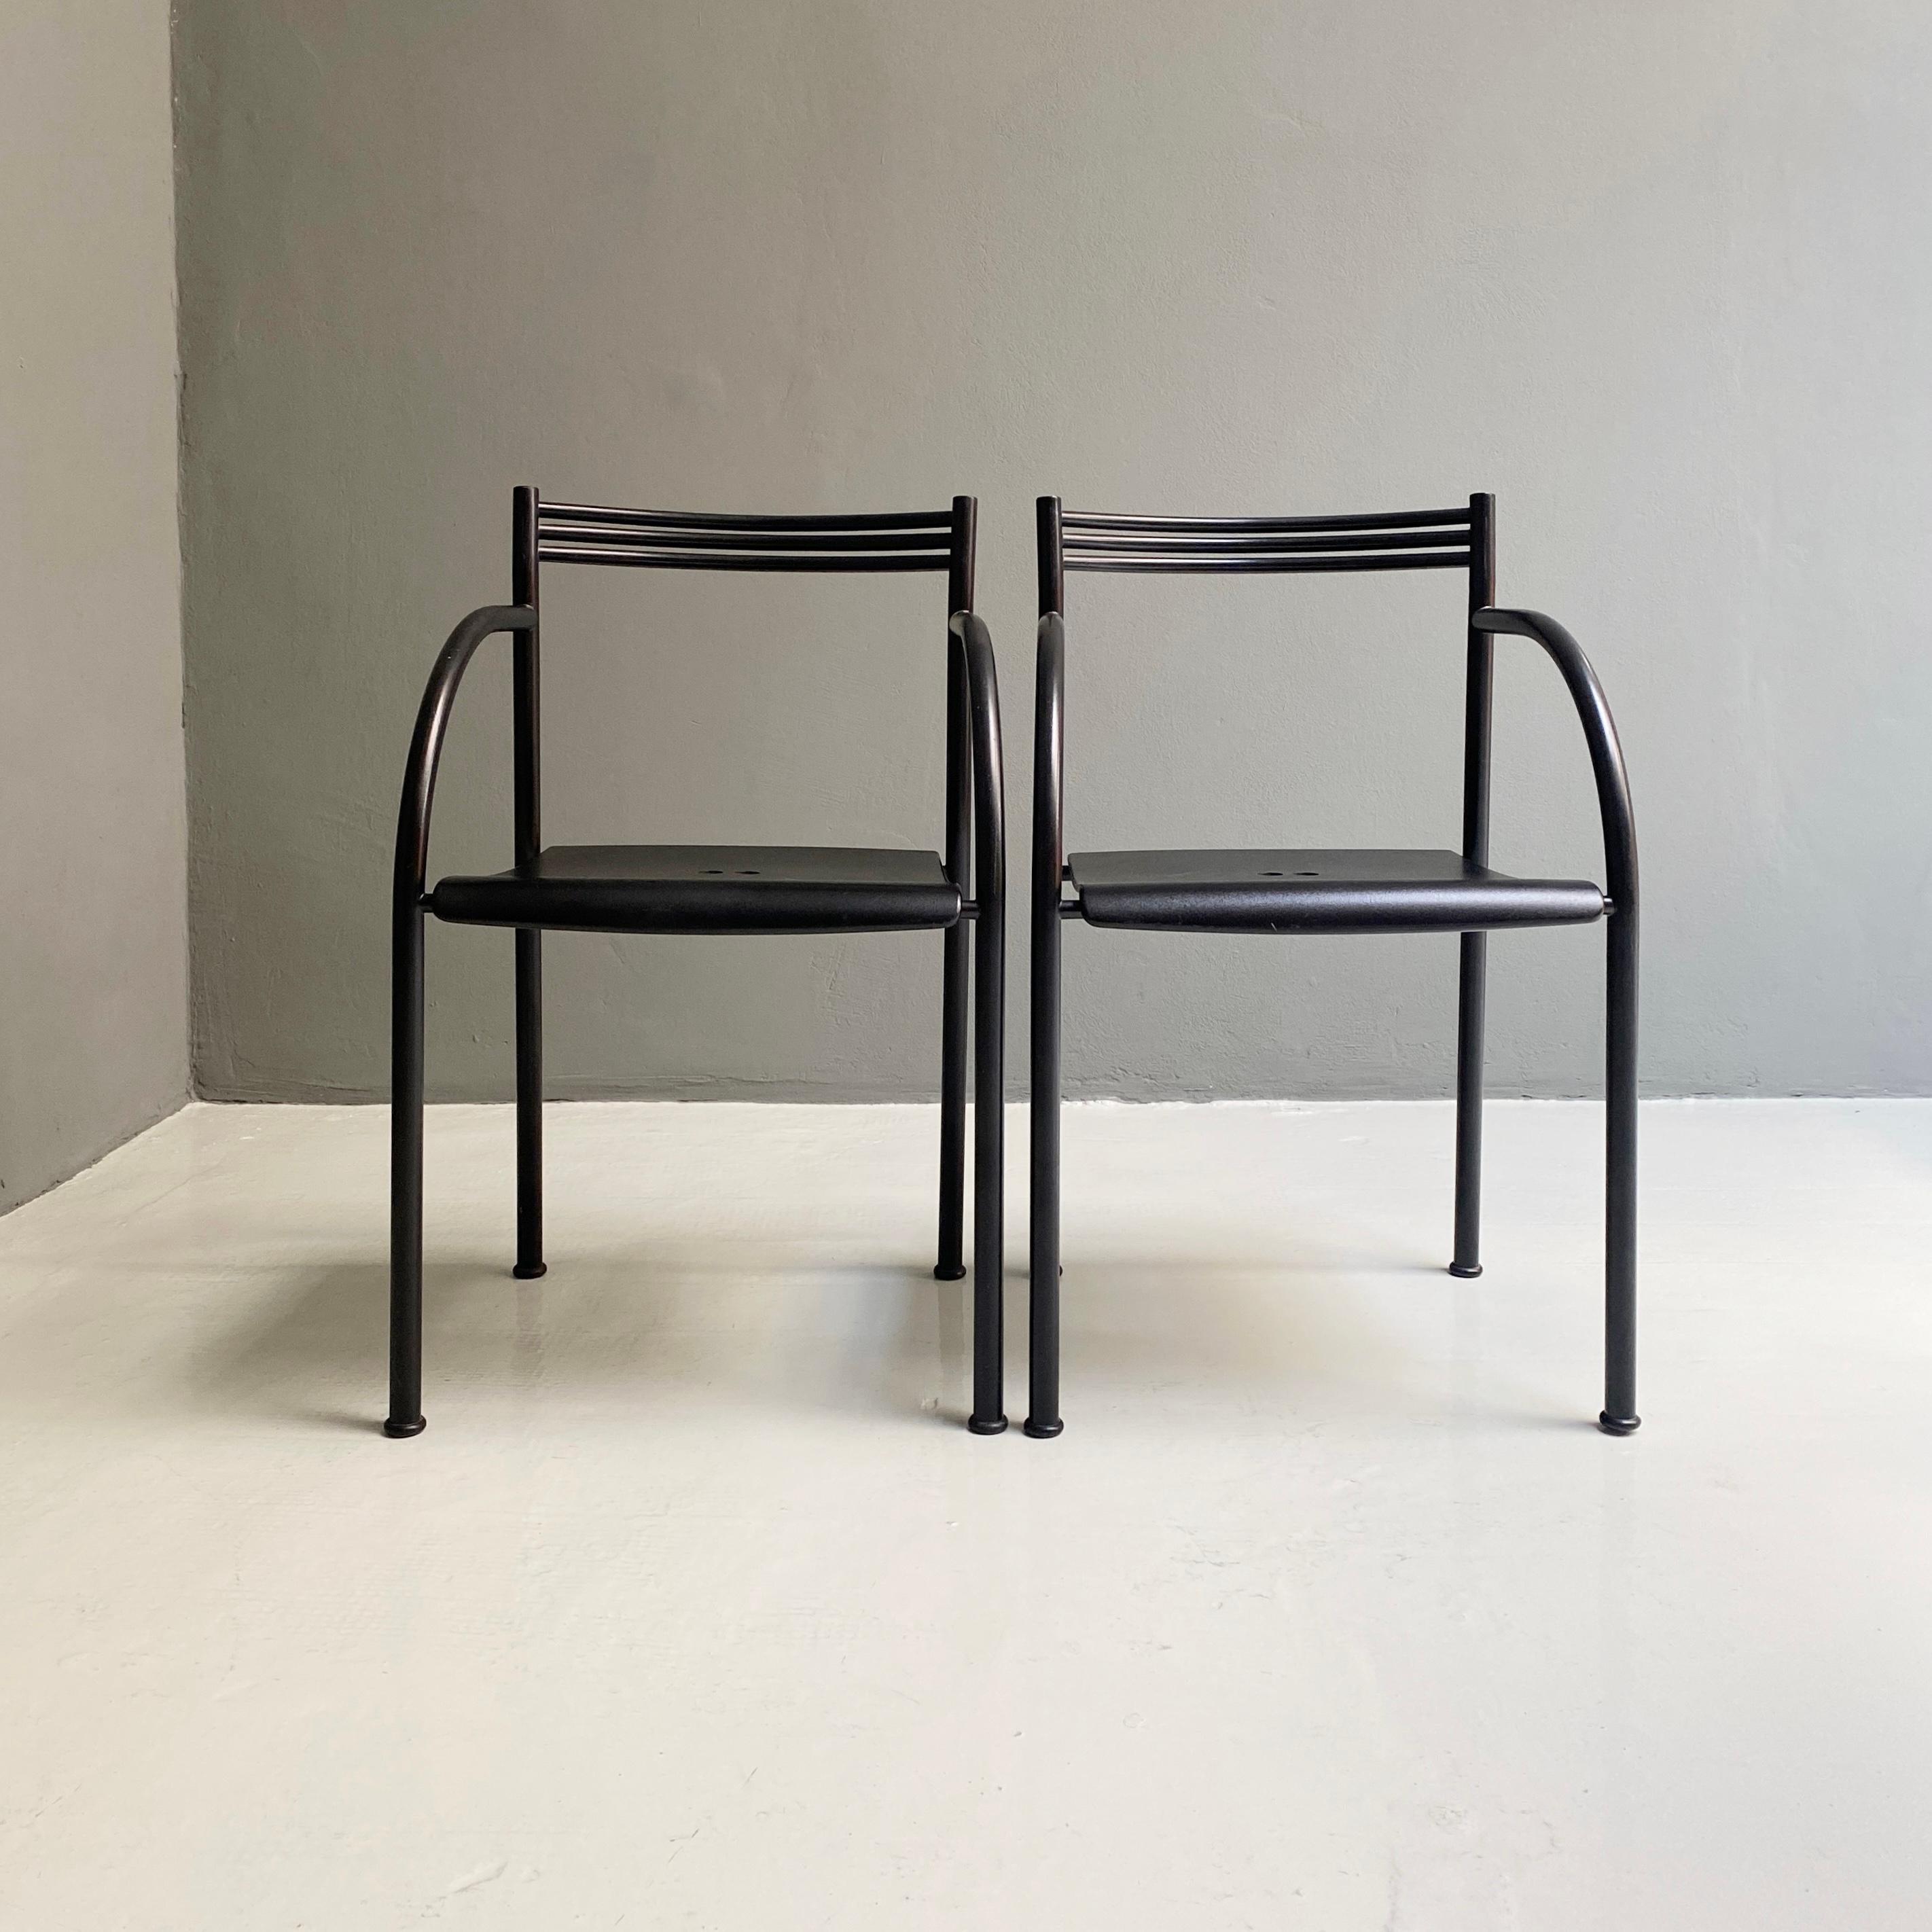 Chaises espagnoles Francesca de Philippe Starck pour Baleri Italia, 1980
Chaises espagnoles Francesca avec structure en métal peint en noir et siège en plastique.
Nommée 